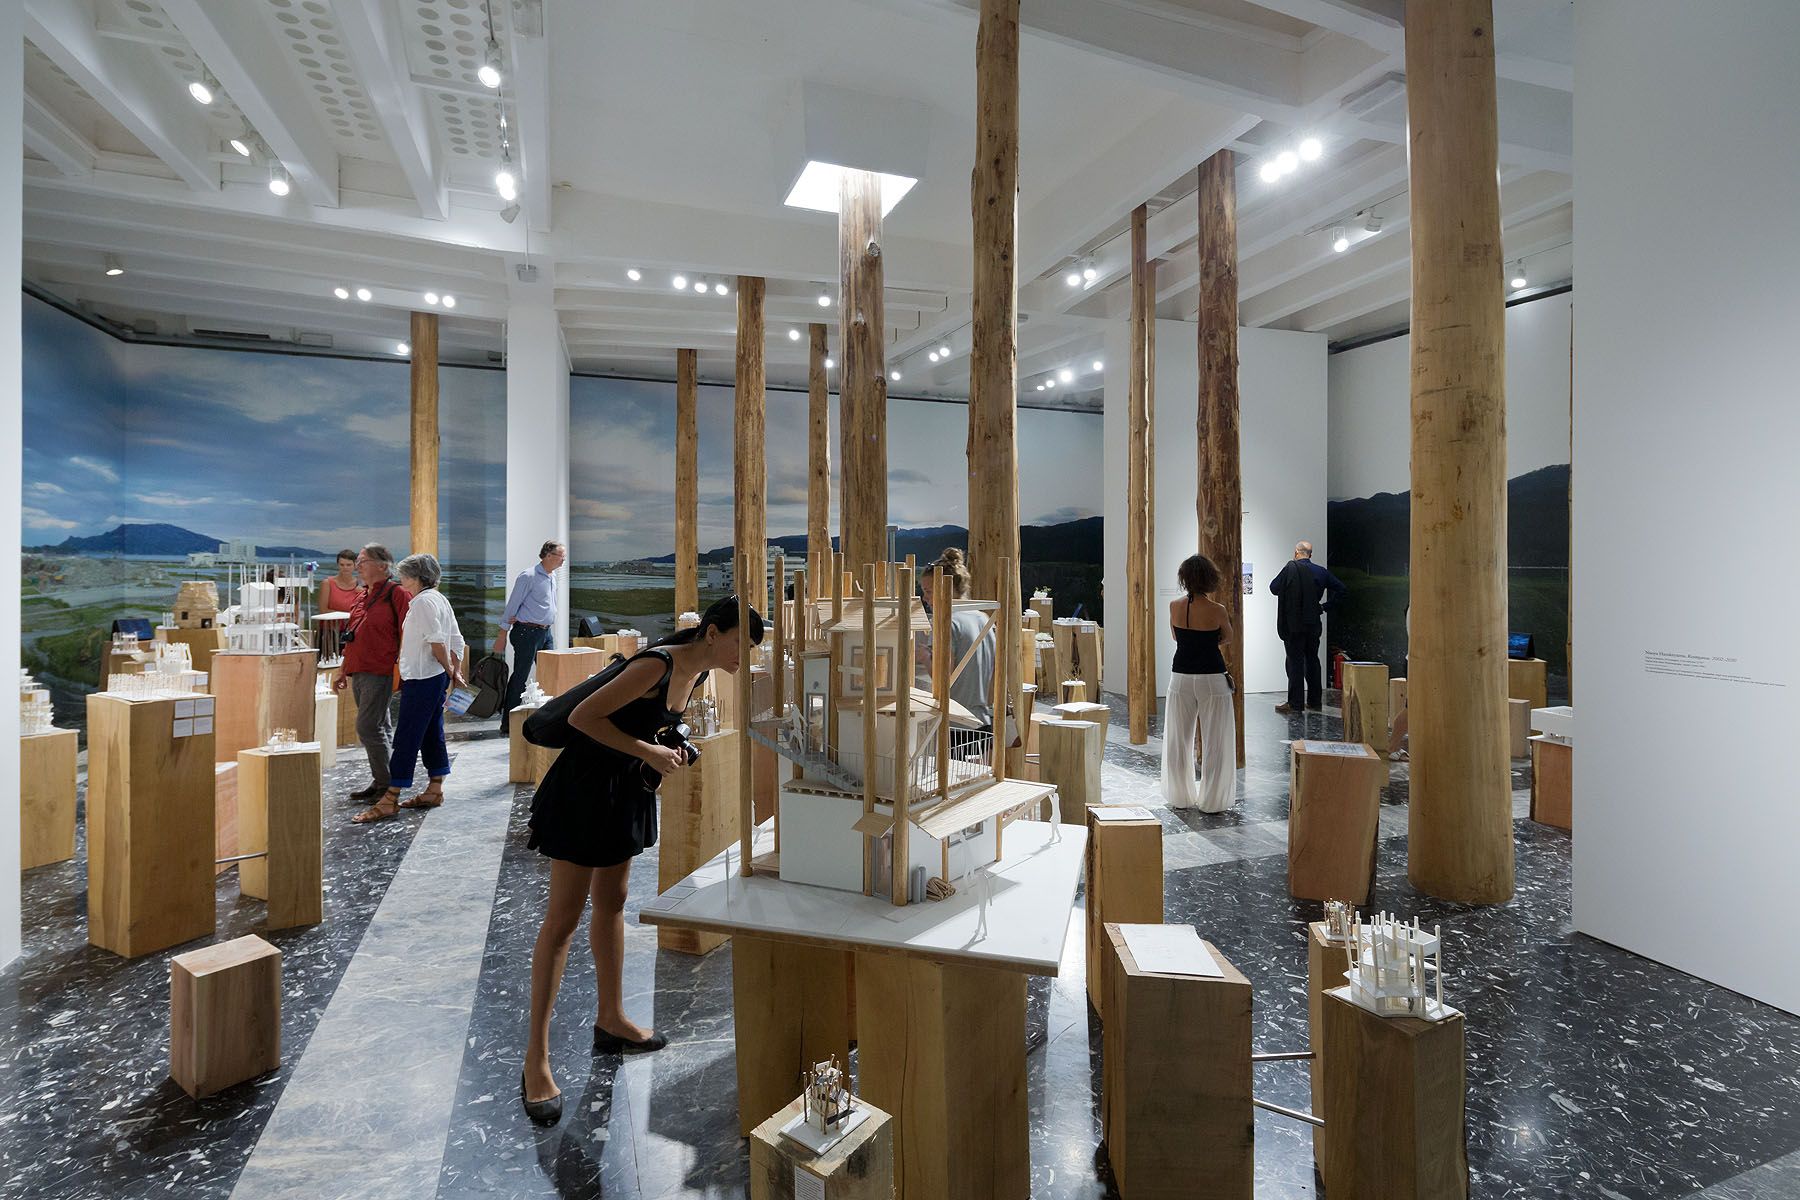 Home For All, Venice Biennale 2012 – Toyo Ito